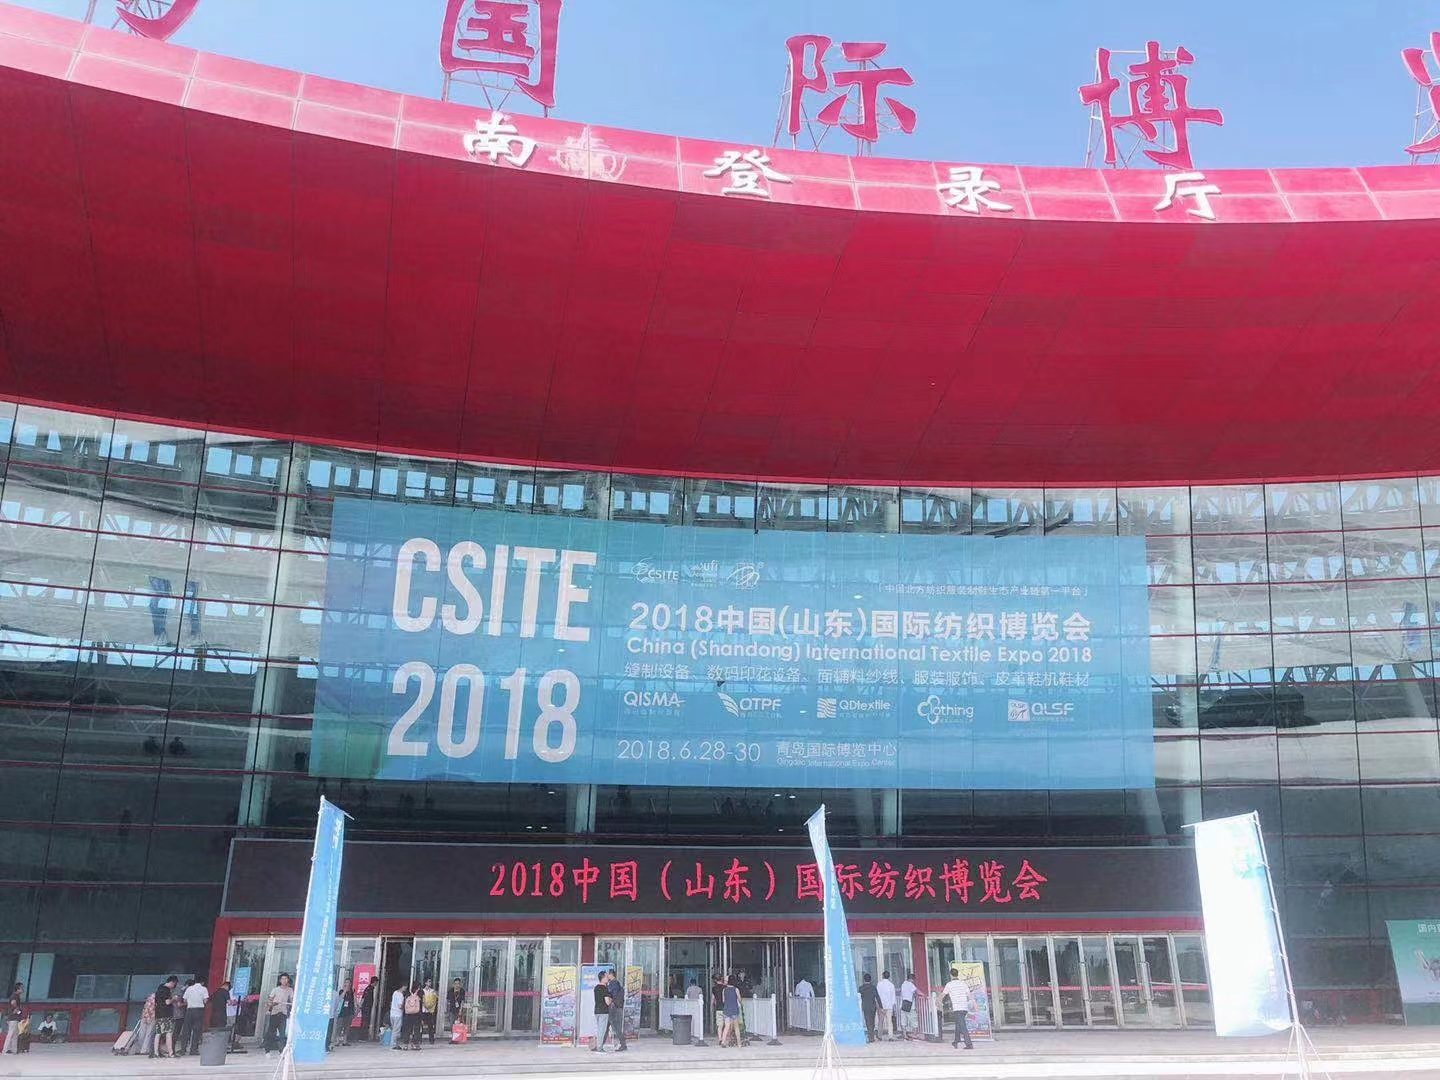 China Shandong International Textile Expo 2018